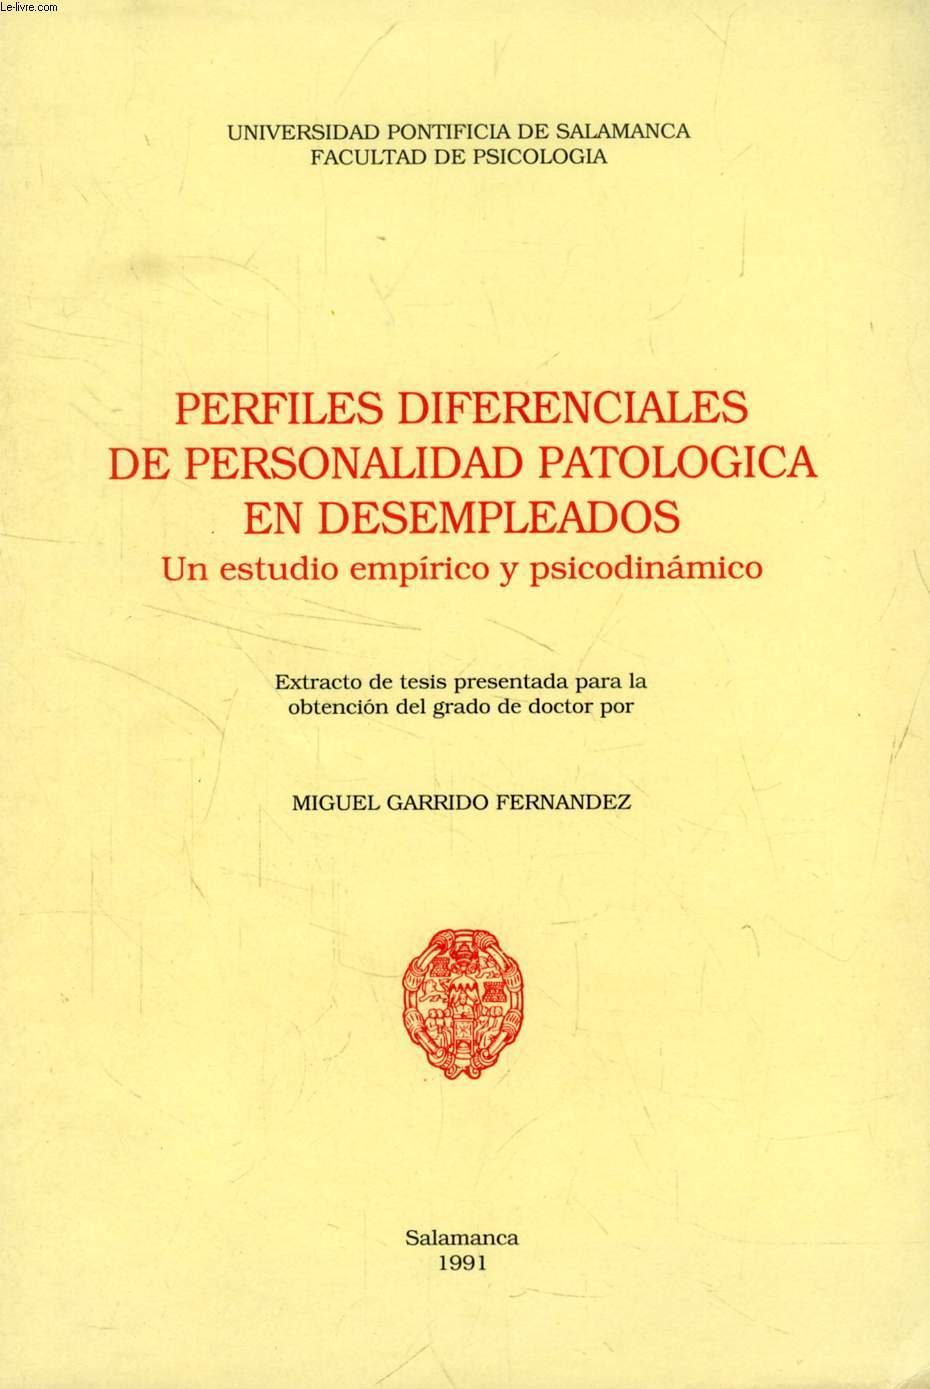 PERFILES DIFERENCIALES DE PERSONALIDAD PATOLOGICA EN DESEMPLEADOS, UN ESTUDIO EMPIRICO Y PSICODINAMICO